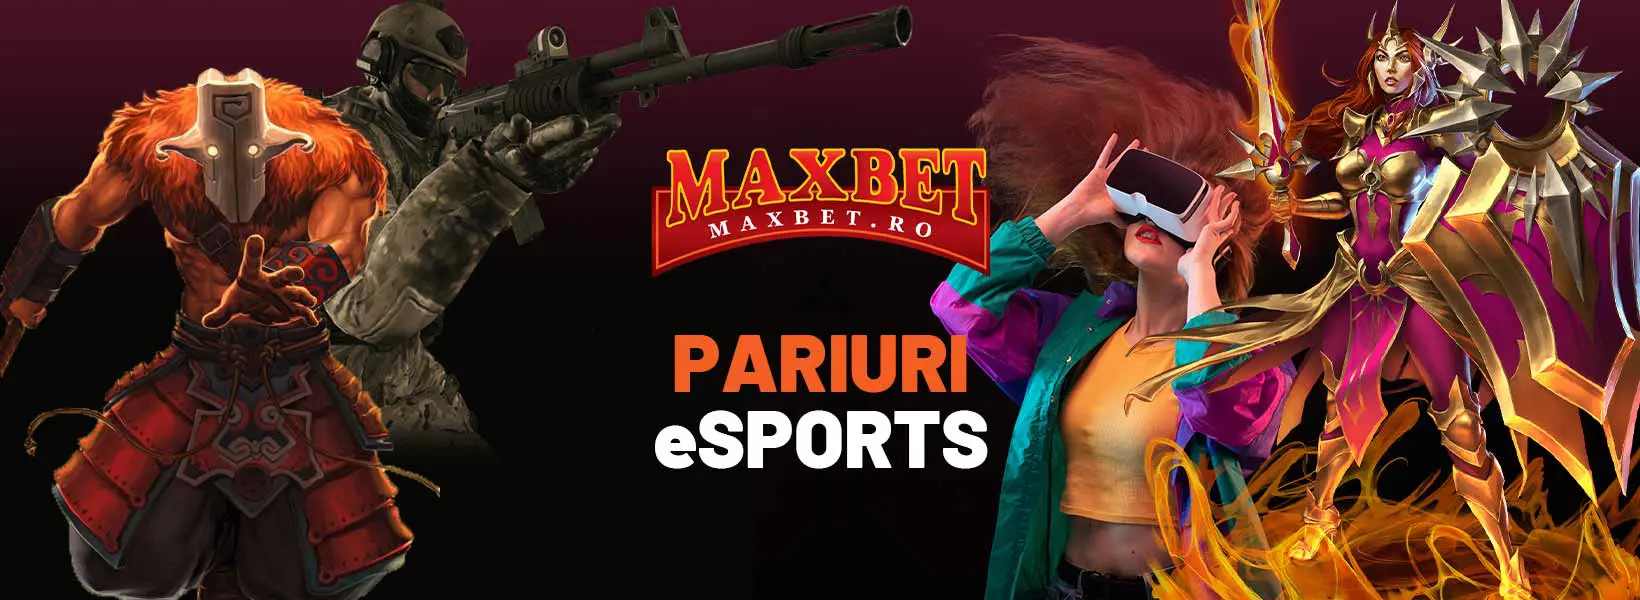 pariuri esports maxbet logo